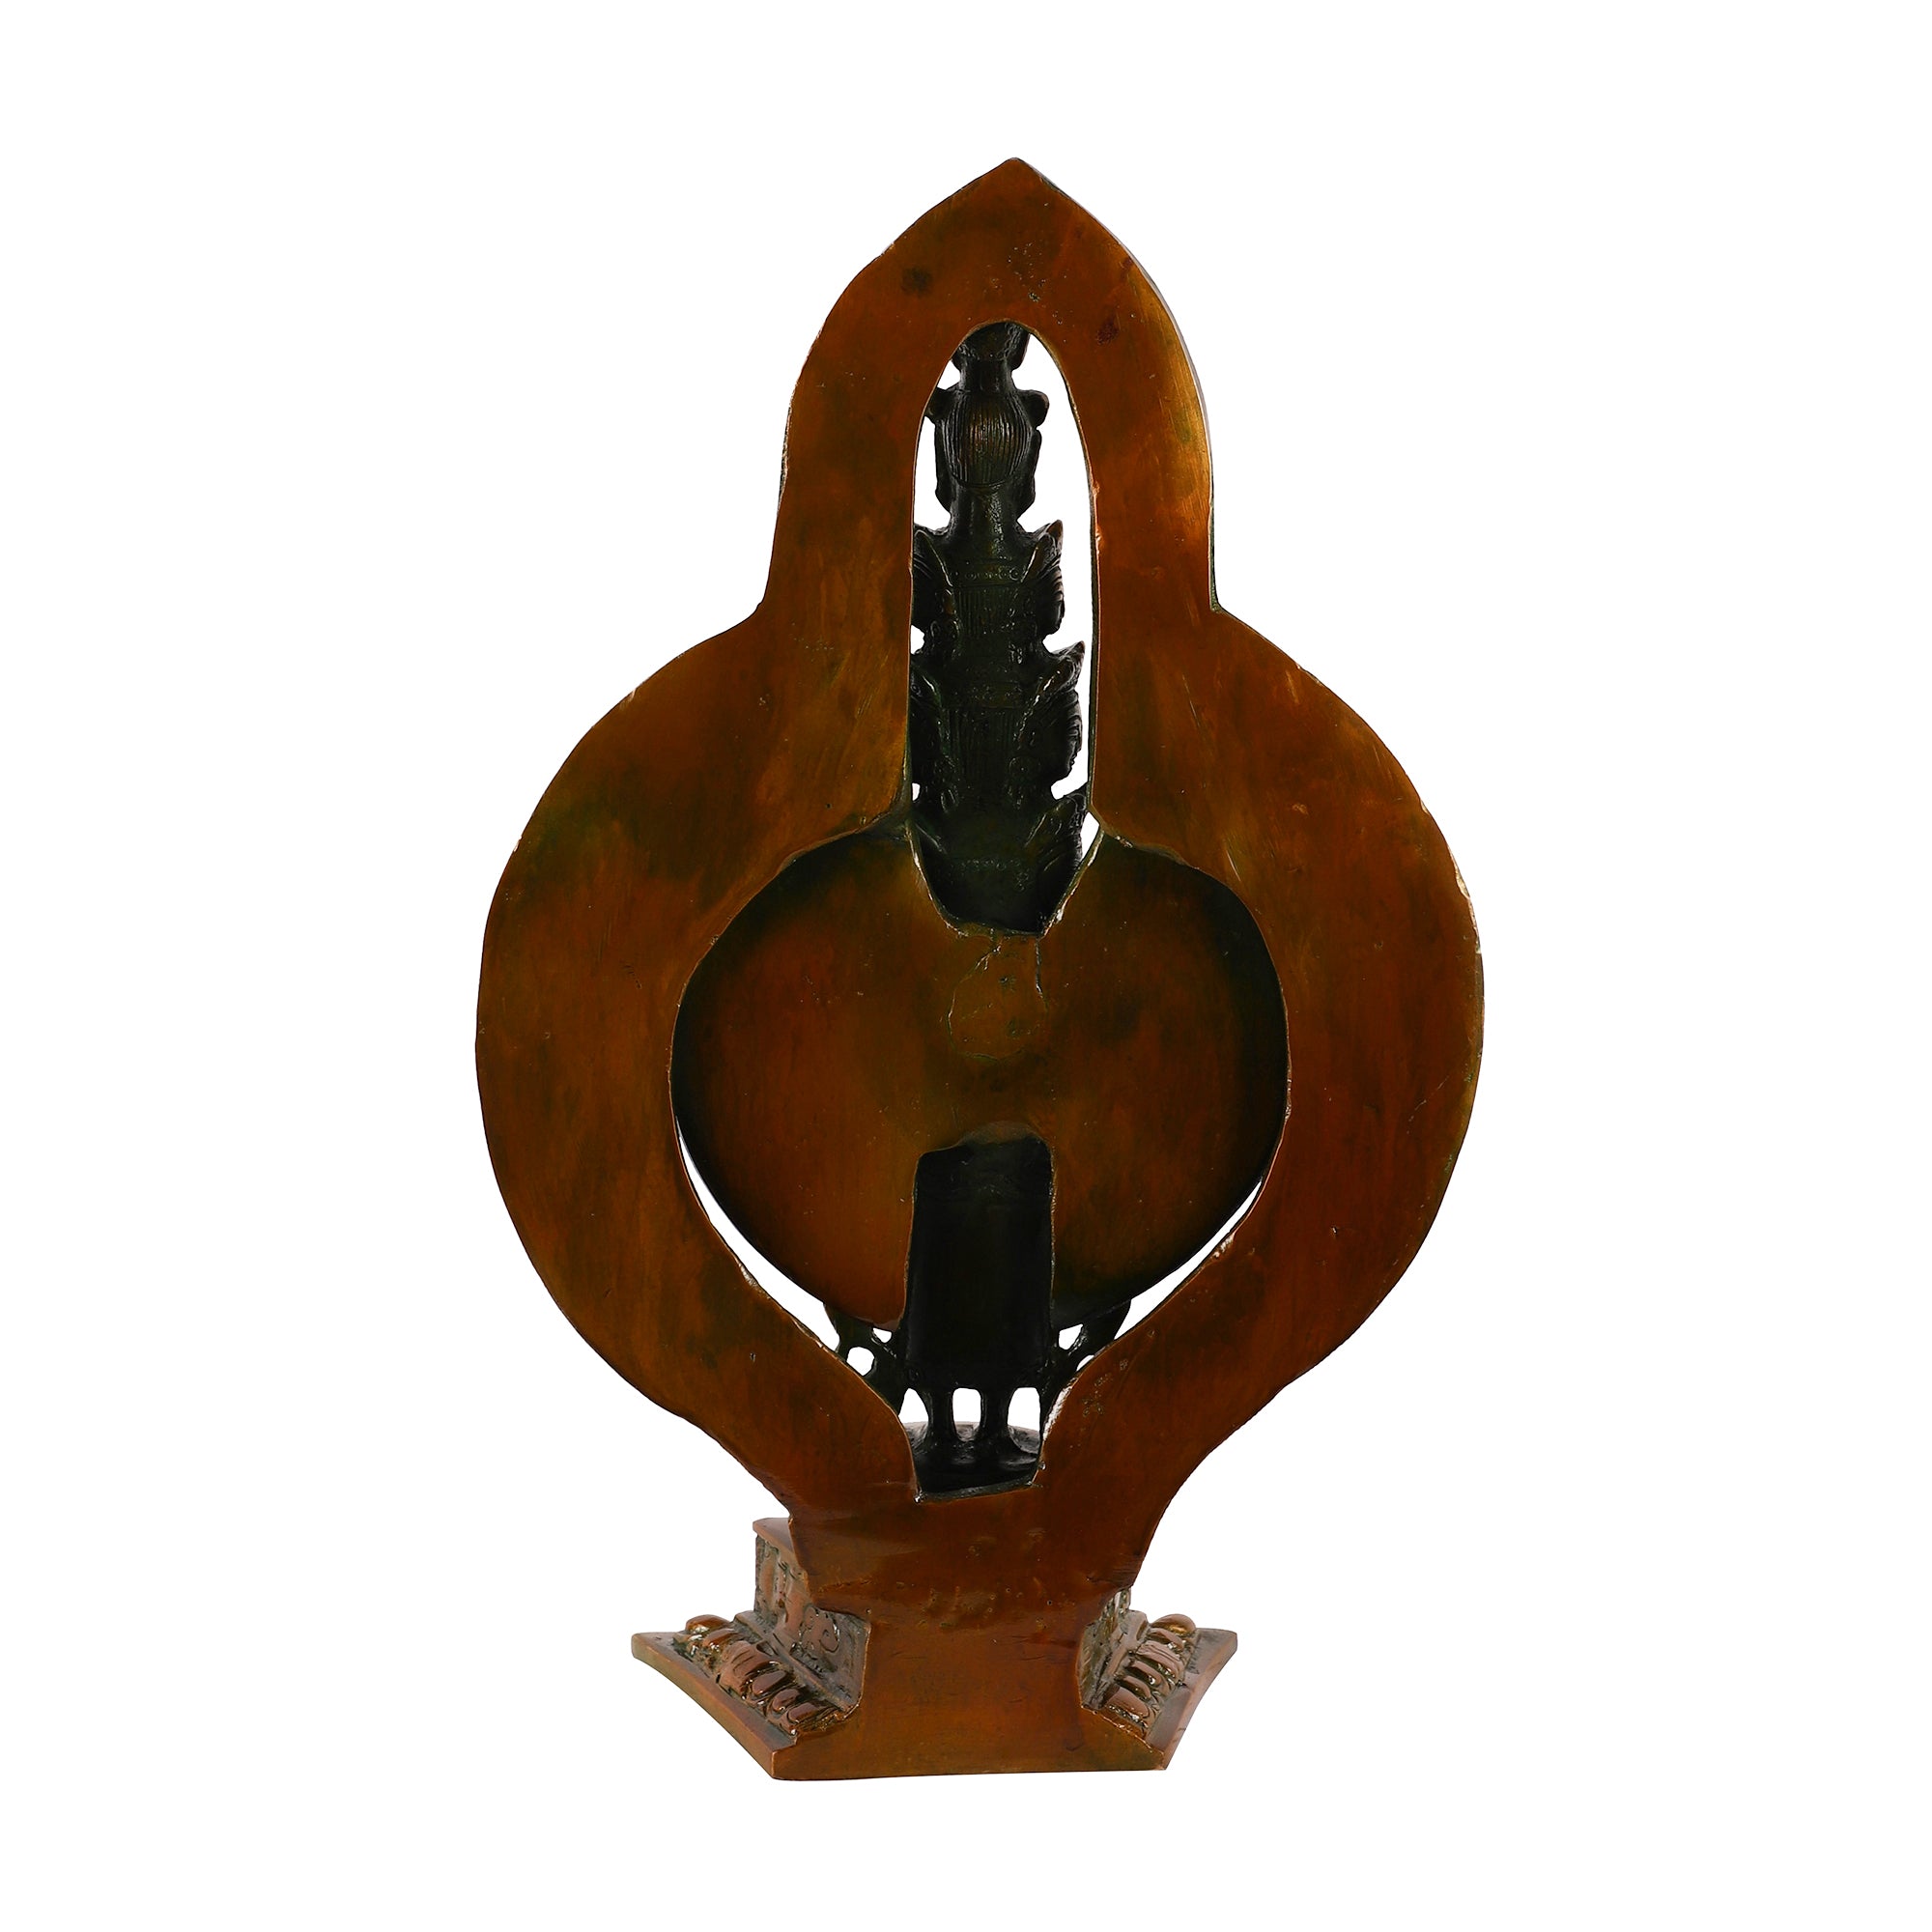 Brass Avlokeswar Idol (Large)